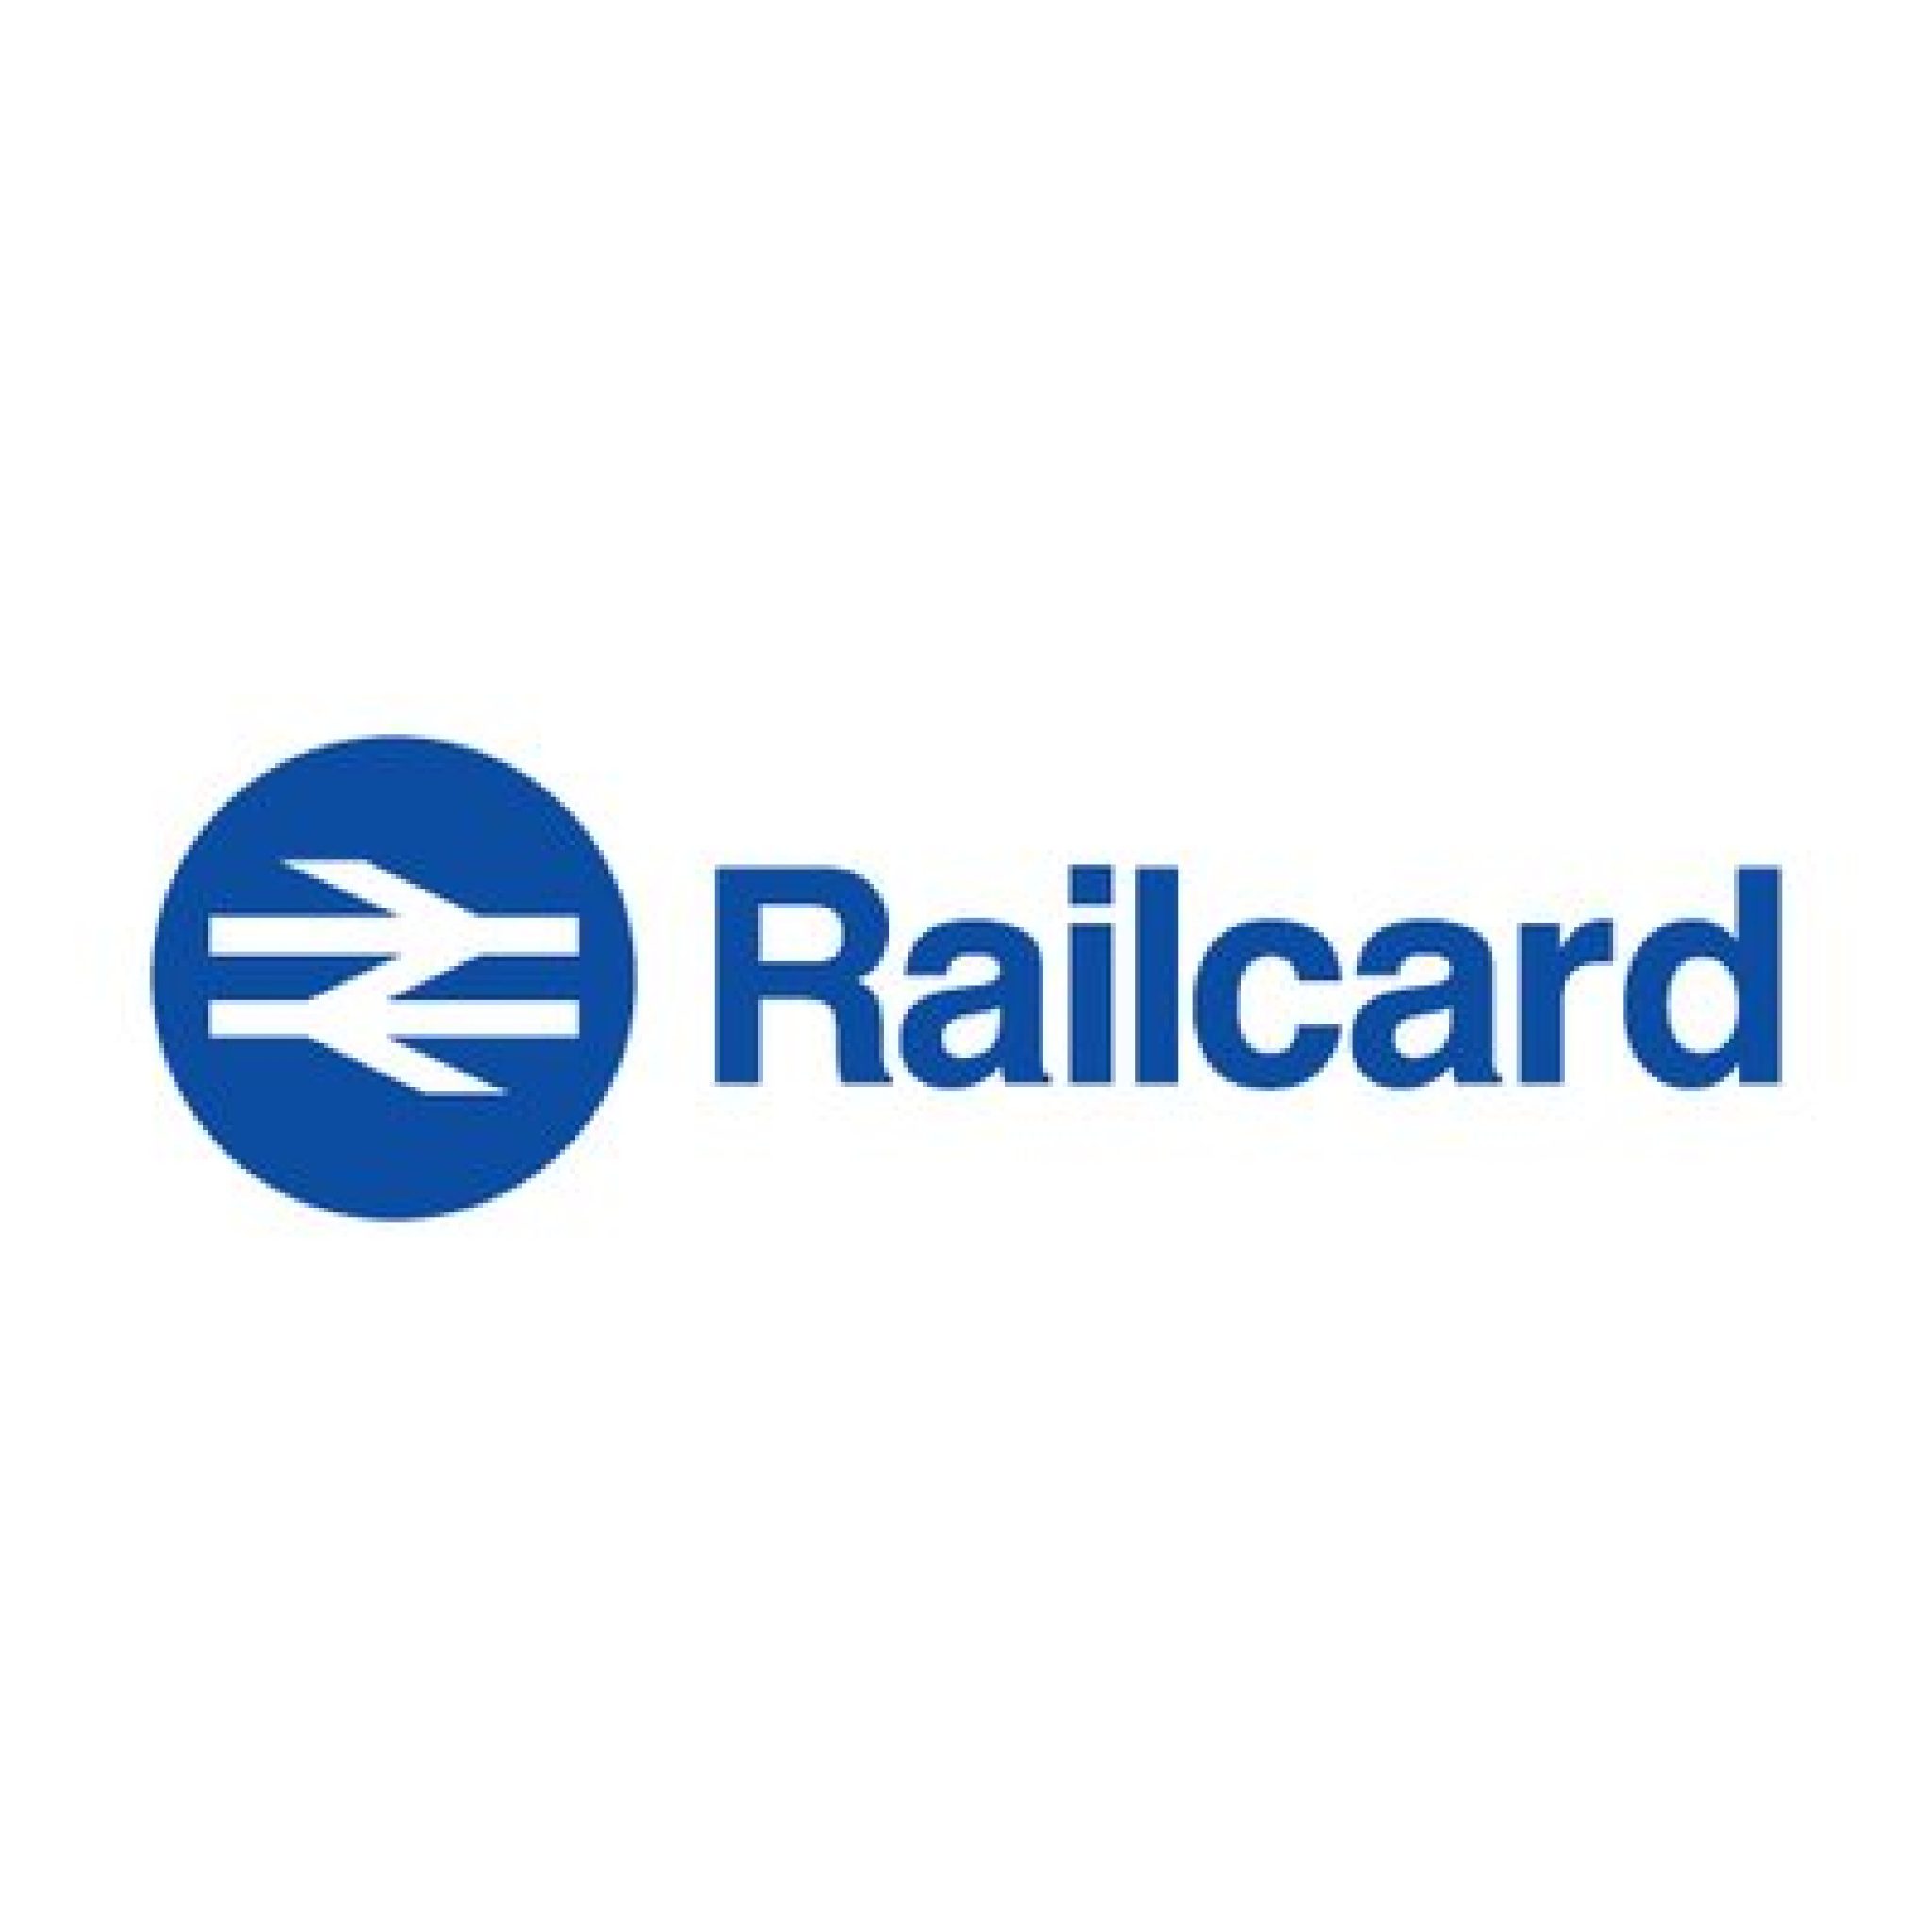 rail staff travel online leisure card